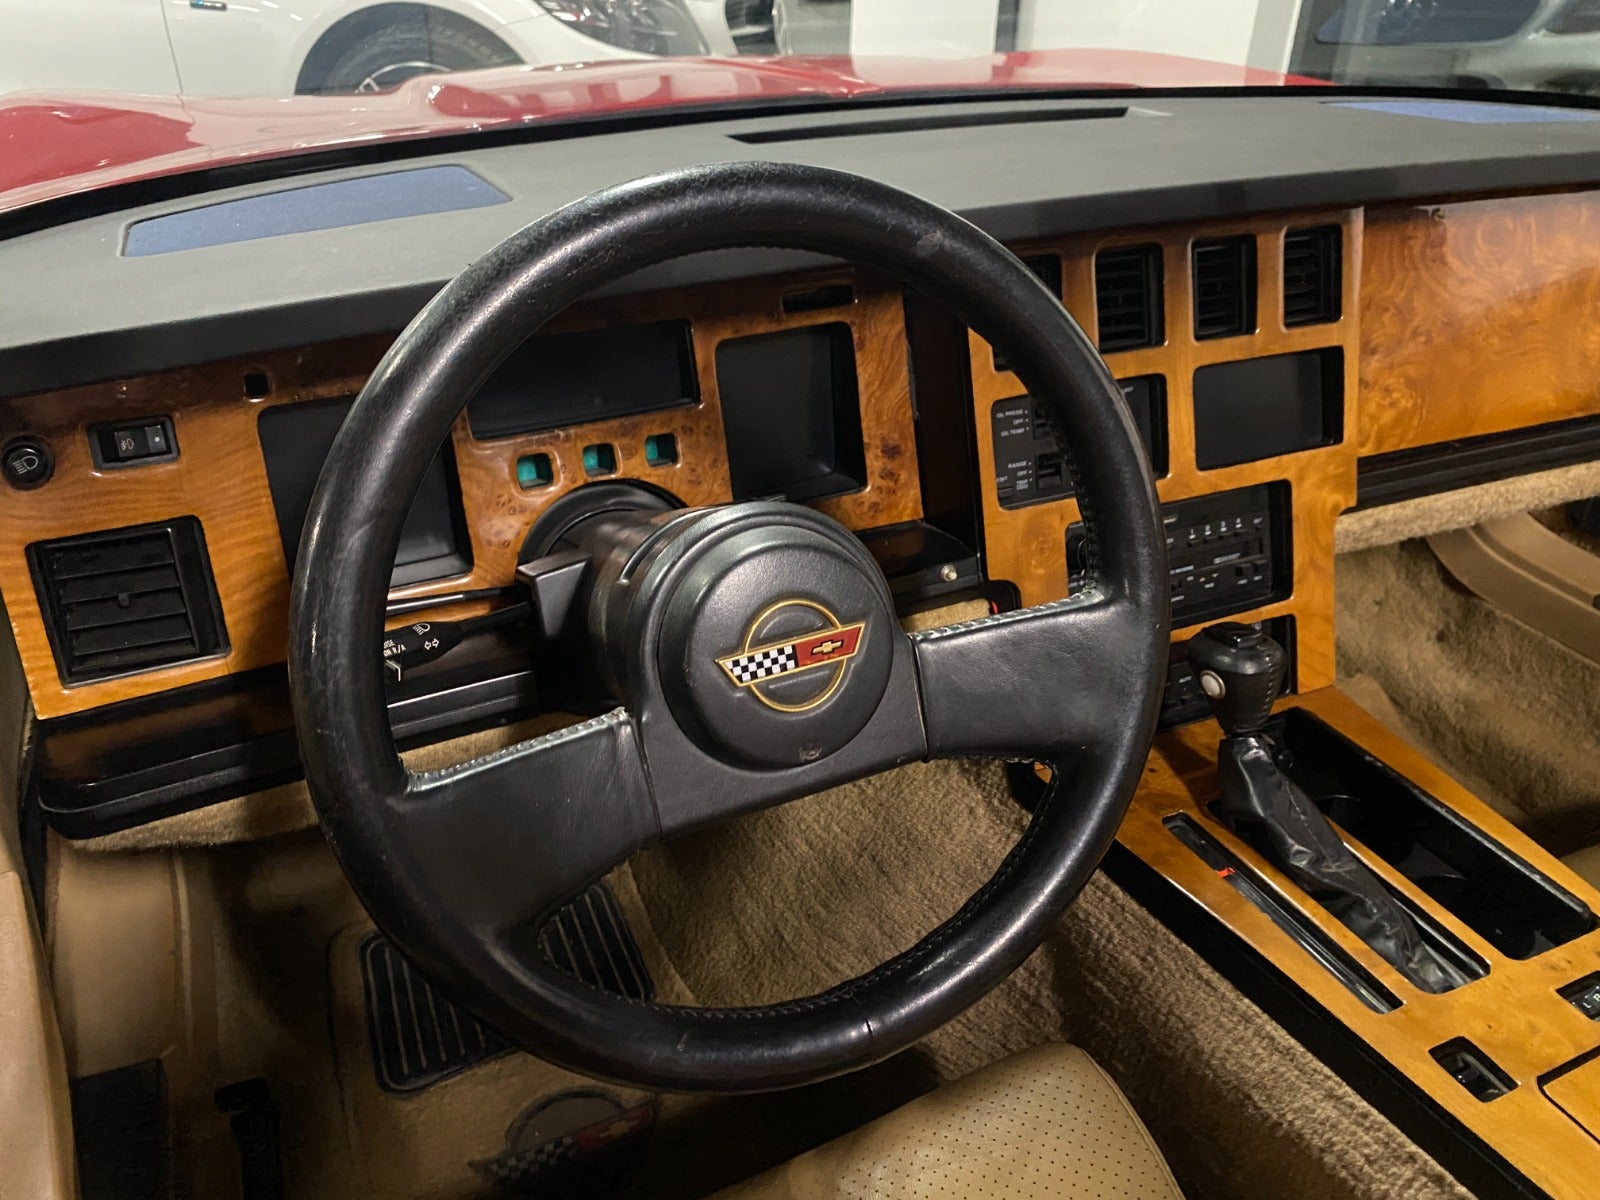 Chevrolet Corvette 1986